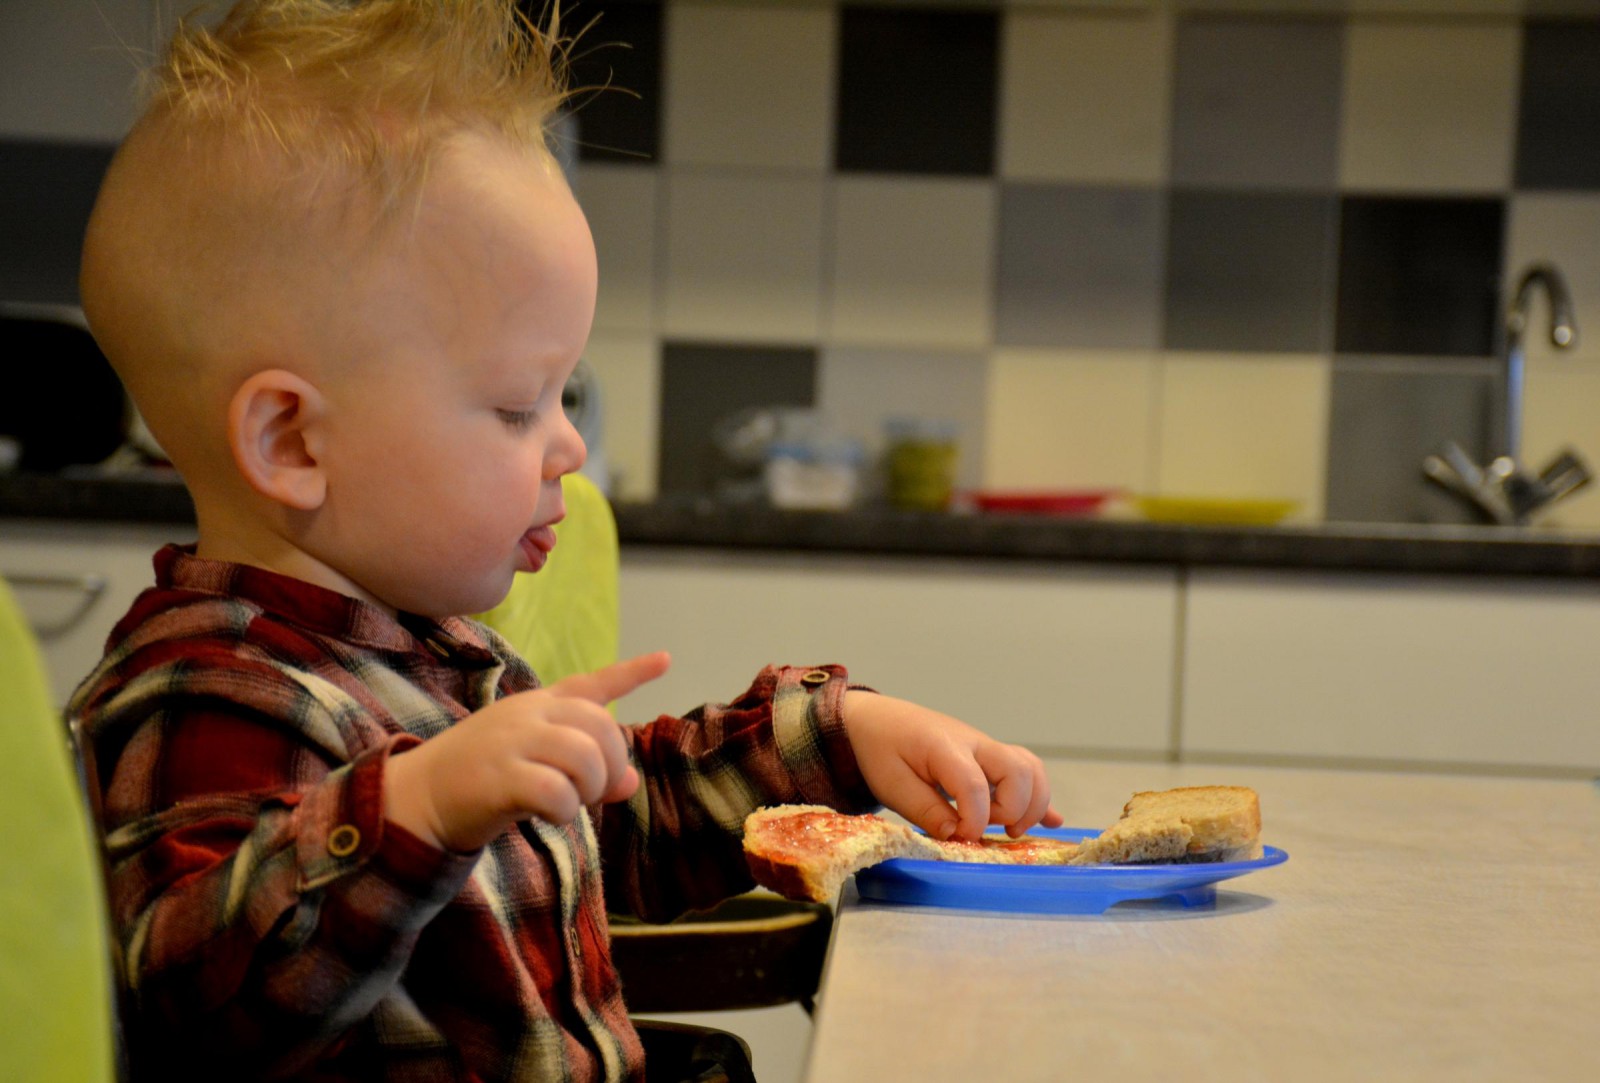 2018-Hoera kindercentra-Dreumes aan tafel in keuken